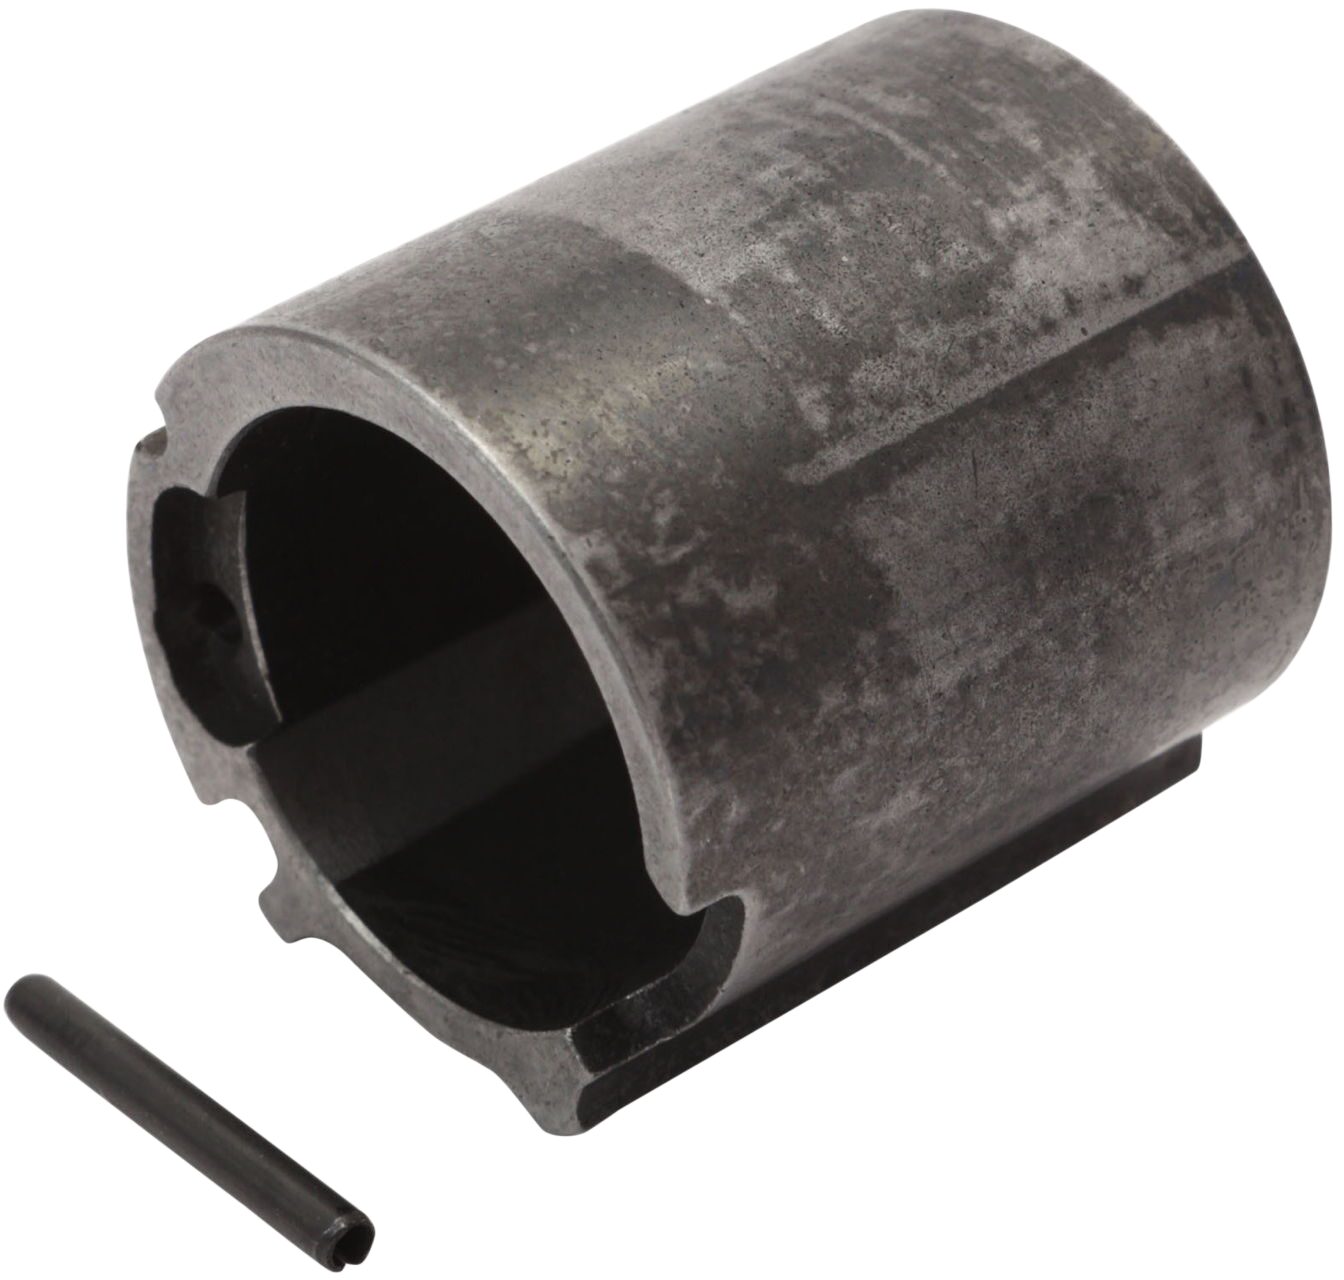 HAZET Zylinder 9020P-2-016/2